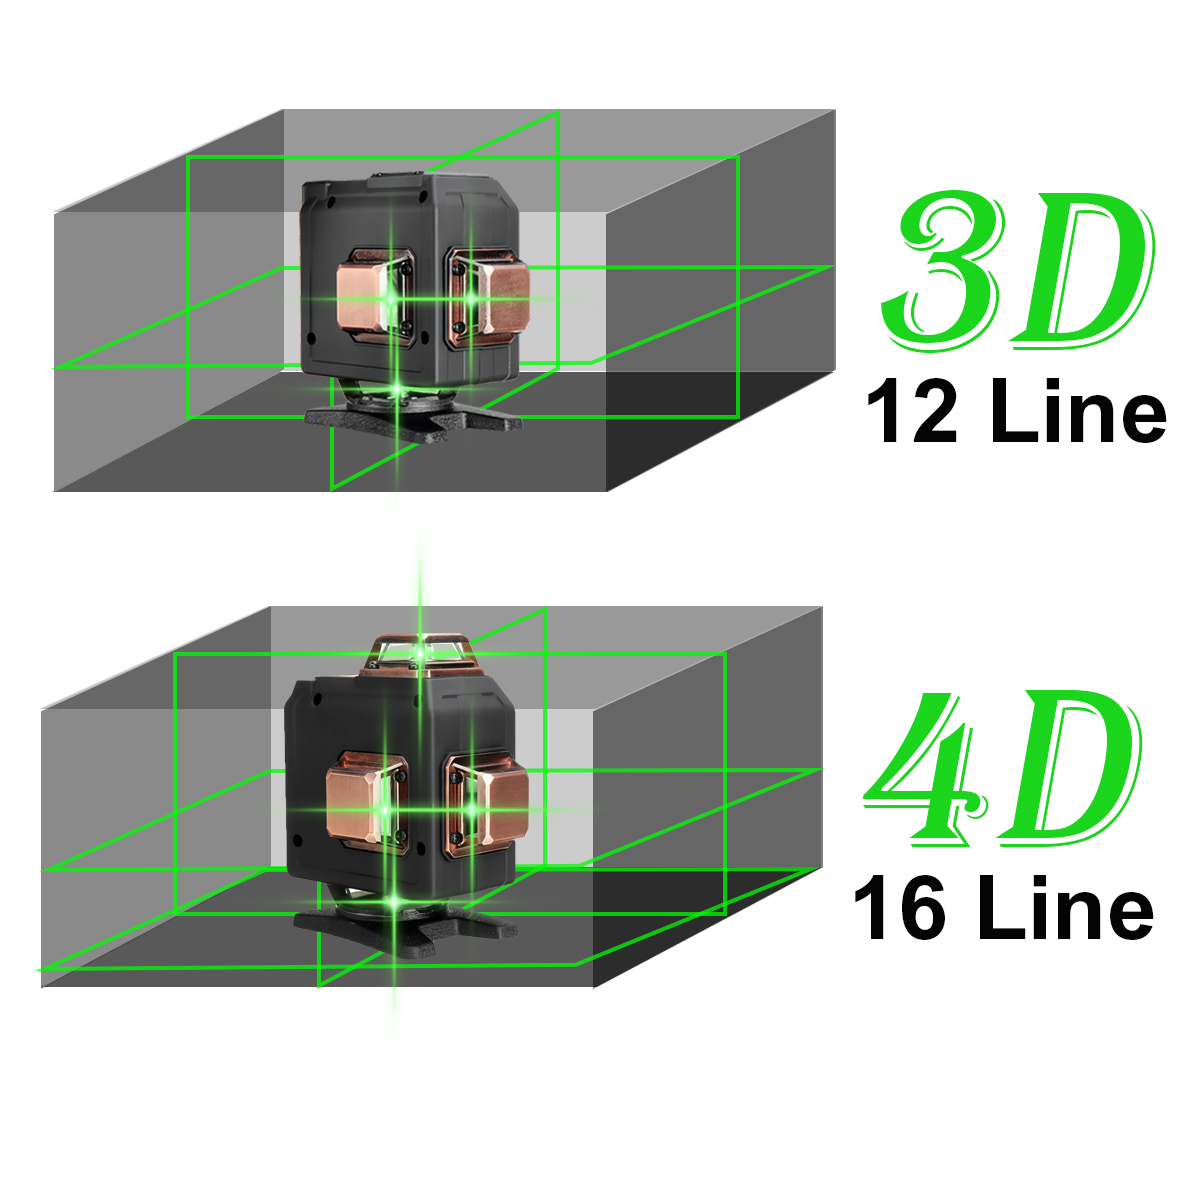 1216-Line-4D-360deg-Rotary-Leveling-Cross-Measure-Tool-Green-Light-Self-Leveling-Measure-Super-Power-1857118-3